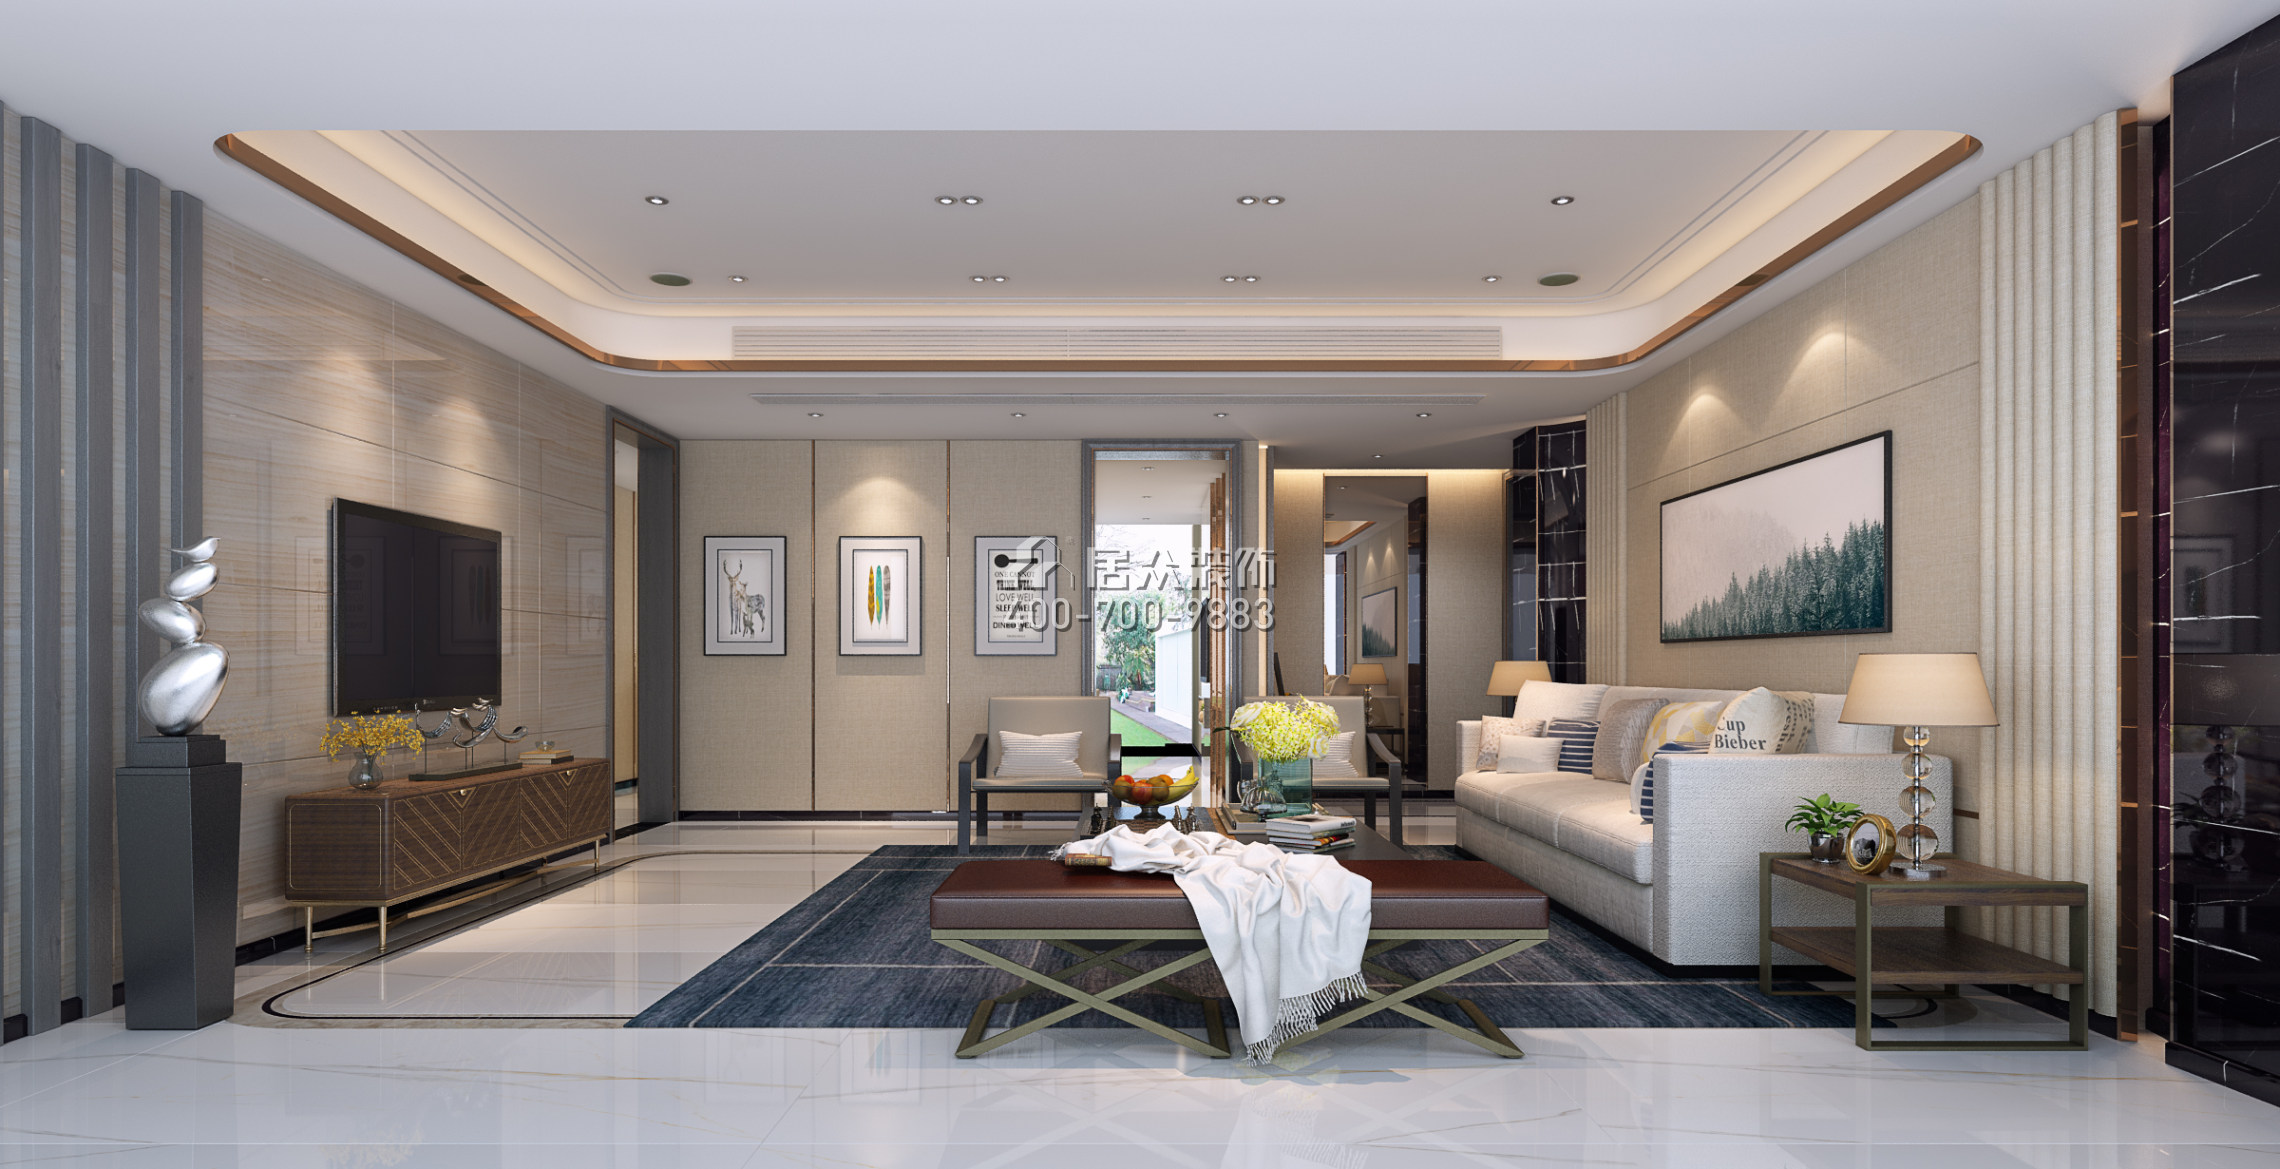 中信紅樹灣一期260平方米現代簡約風格平層戶型客廳裝修效果圖